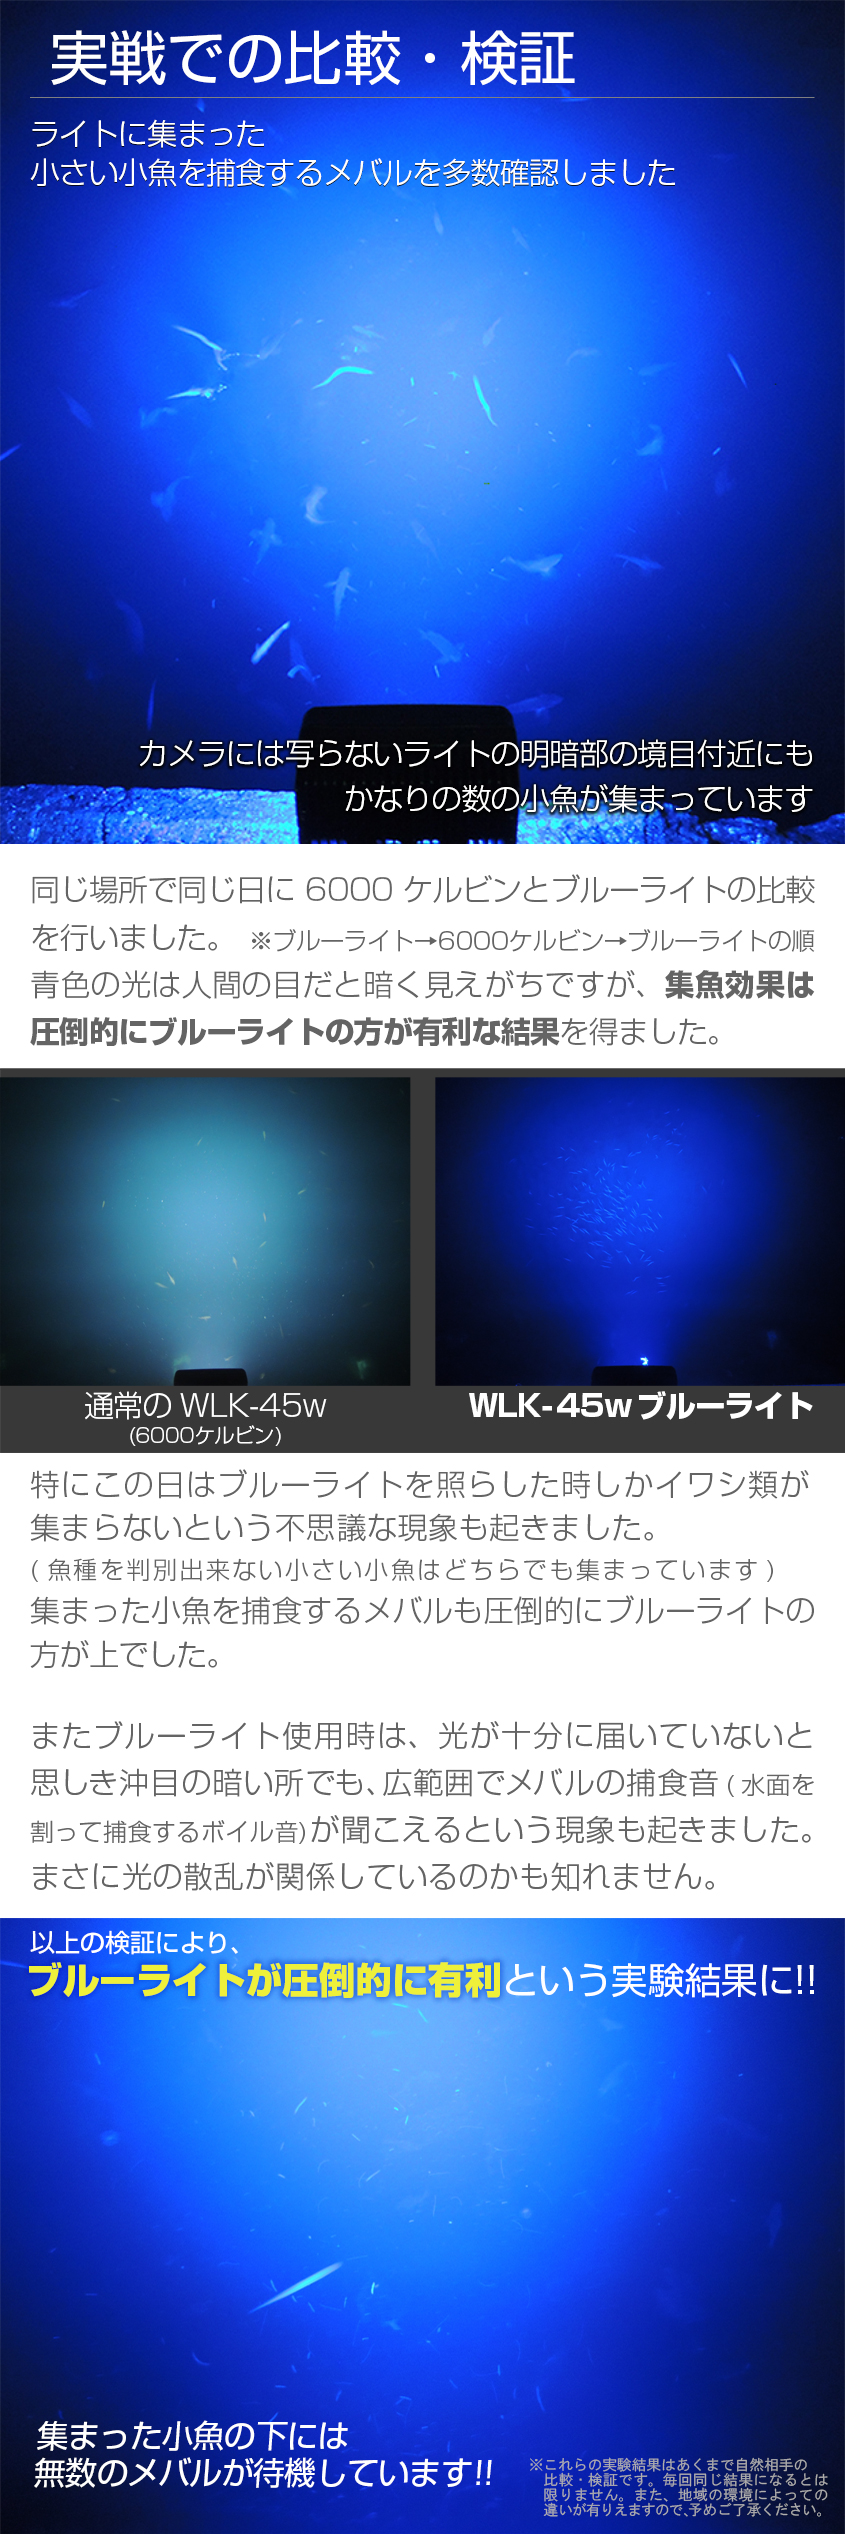 集魚灯 アジ 釣り 青 45w 集魚ライト 12v 24v バッテリー 対応 魚系に効果抜群の ブルーライト LEDチップ搭載 タチウオ いさき  サンマ 投光器 イカ釣り ライト :WLK-45w-Blue:K'sガレージ - 通販 -  - 일본구매대행 직구 바이박스